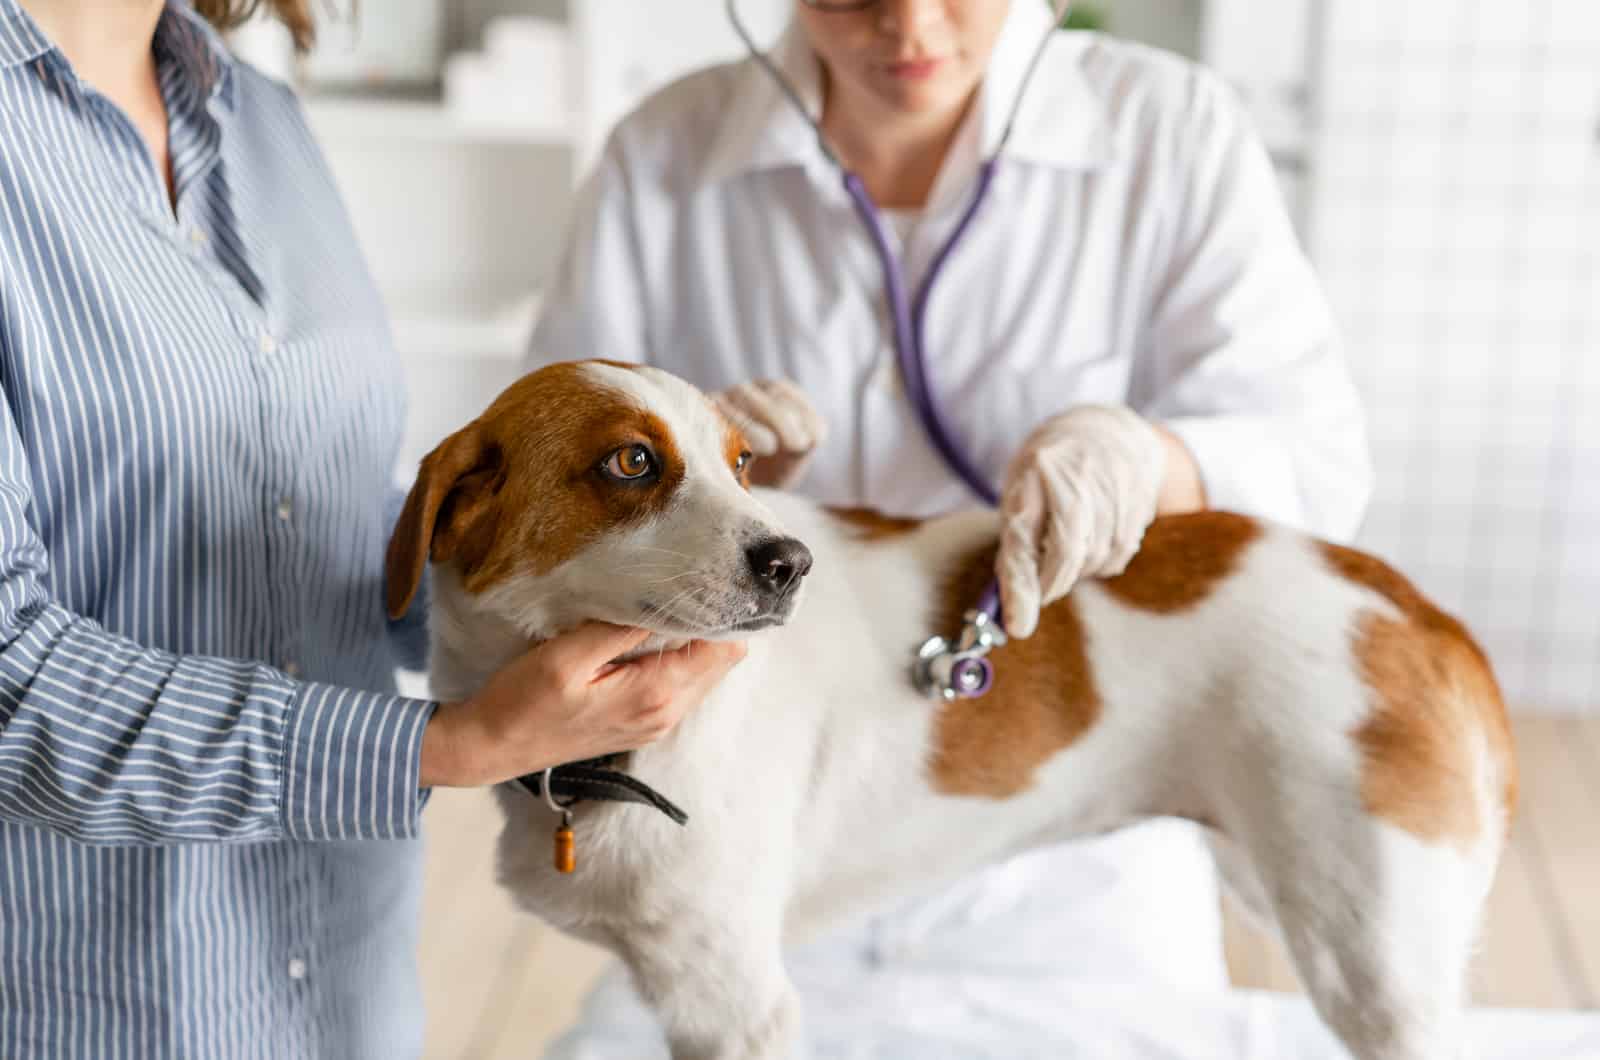 doctor examining dog with stethoscope